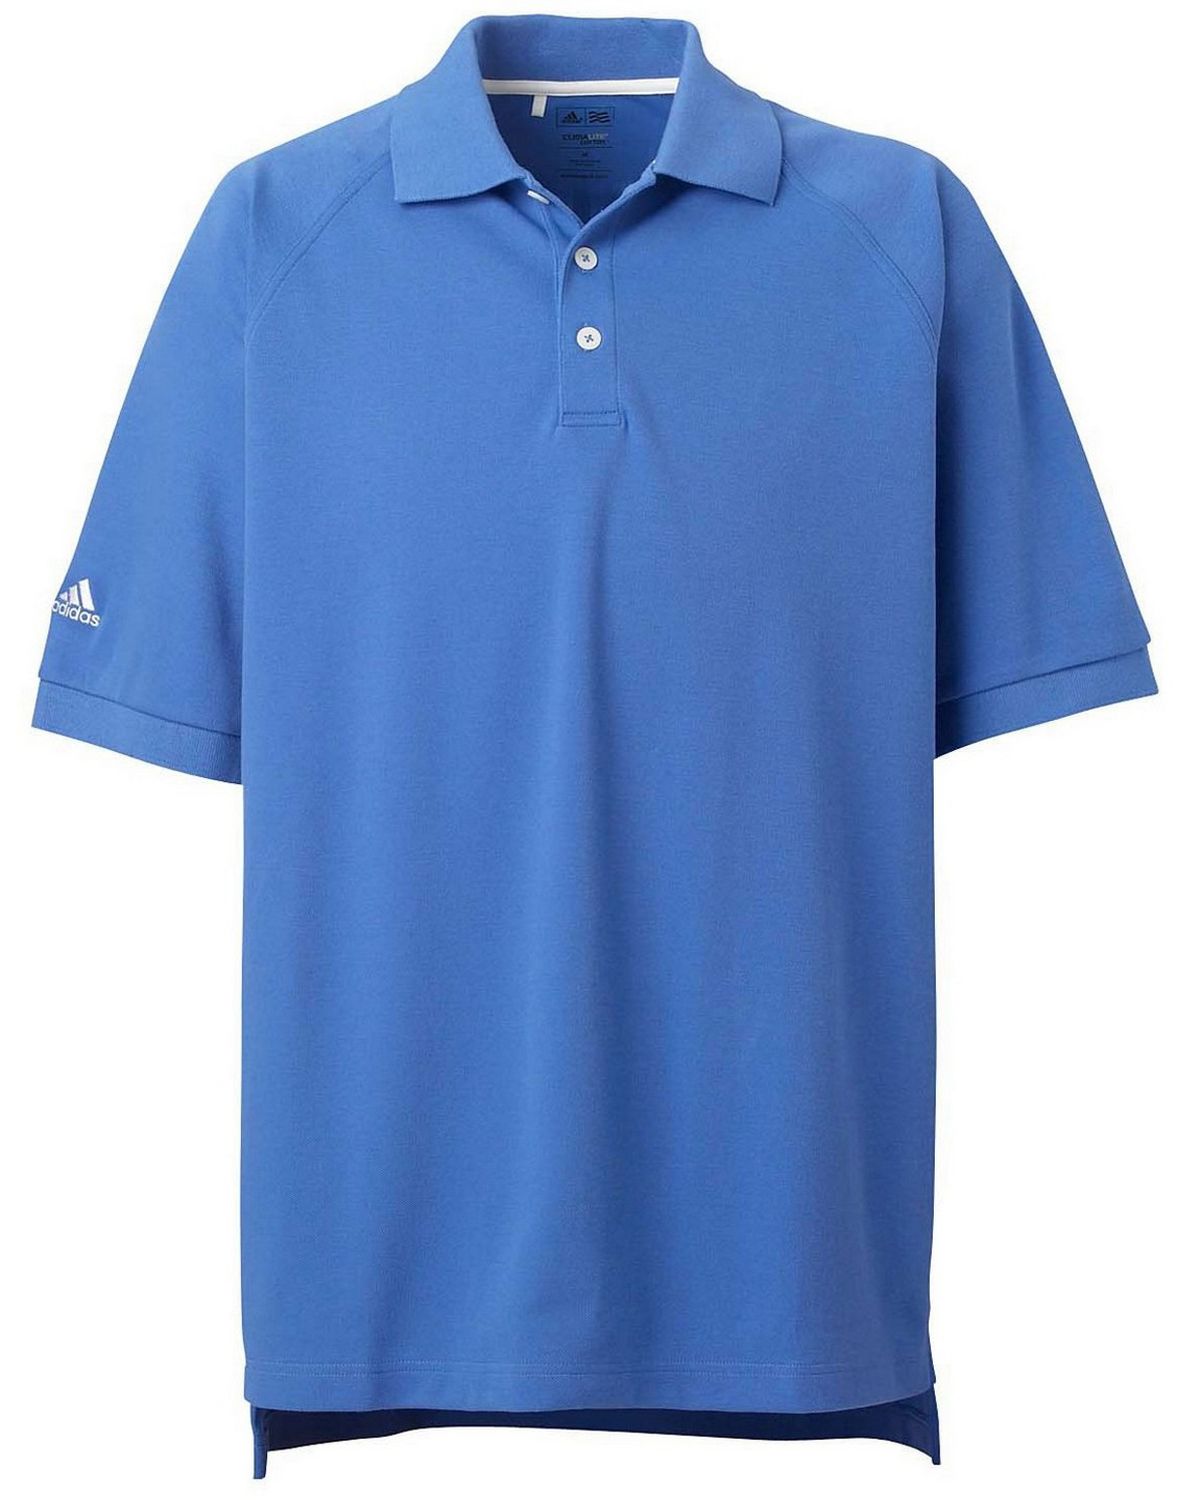 Shop Adidas Golf A108 Men’s ClimaLite Tour Pique Short-Sleeve Polo ...